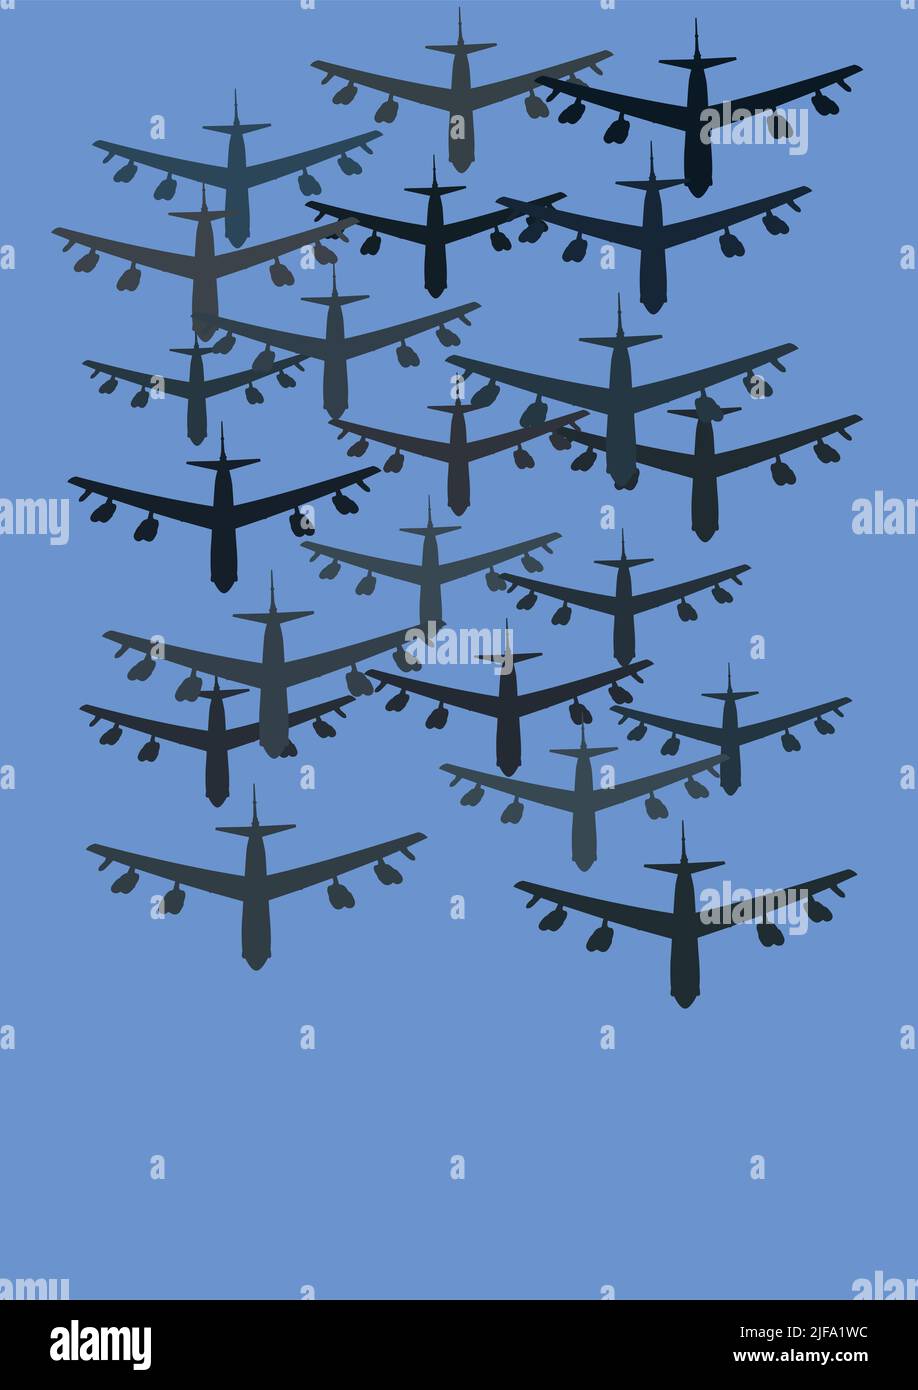 Illustration von Flugzeugen, die auf blauem Hintergrund fliegen, speichern ukraine Konzept, Stock Illustration Stockfoto